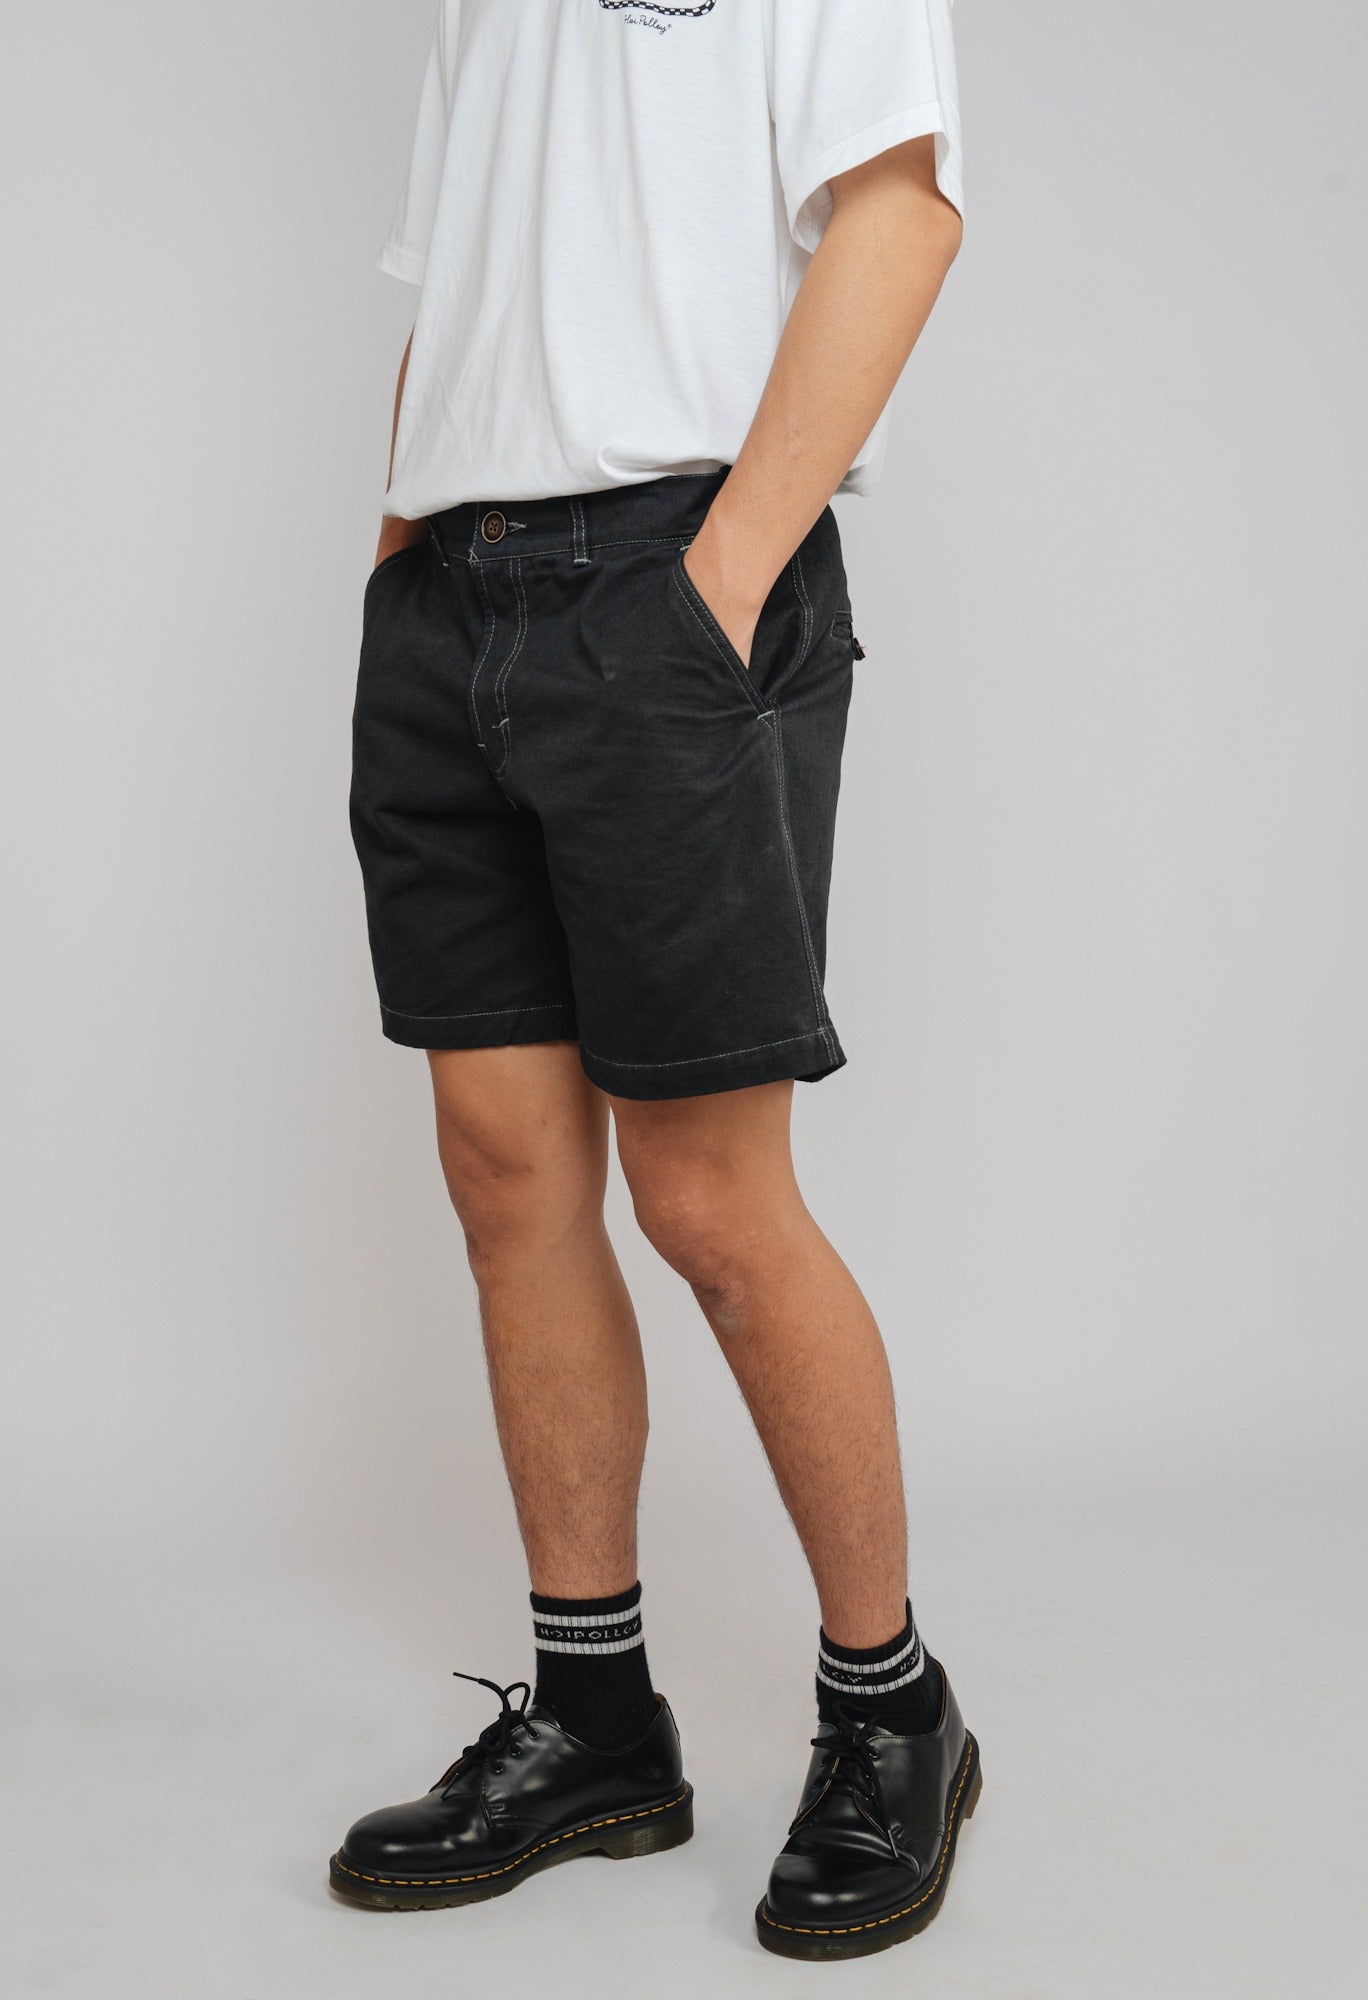 Slack Shorts Black